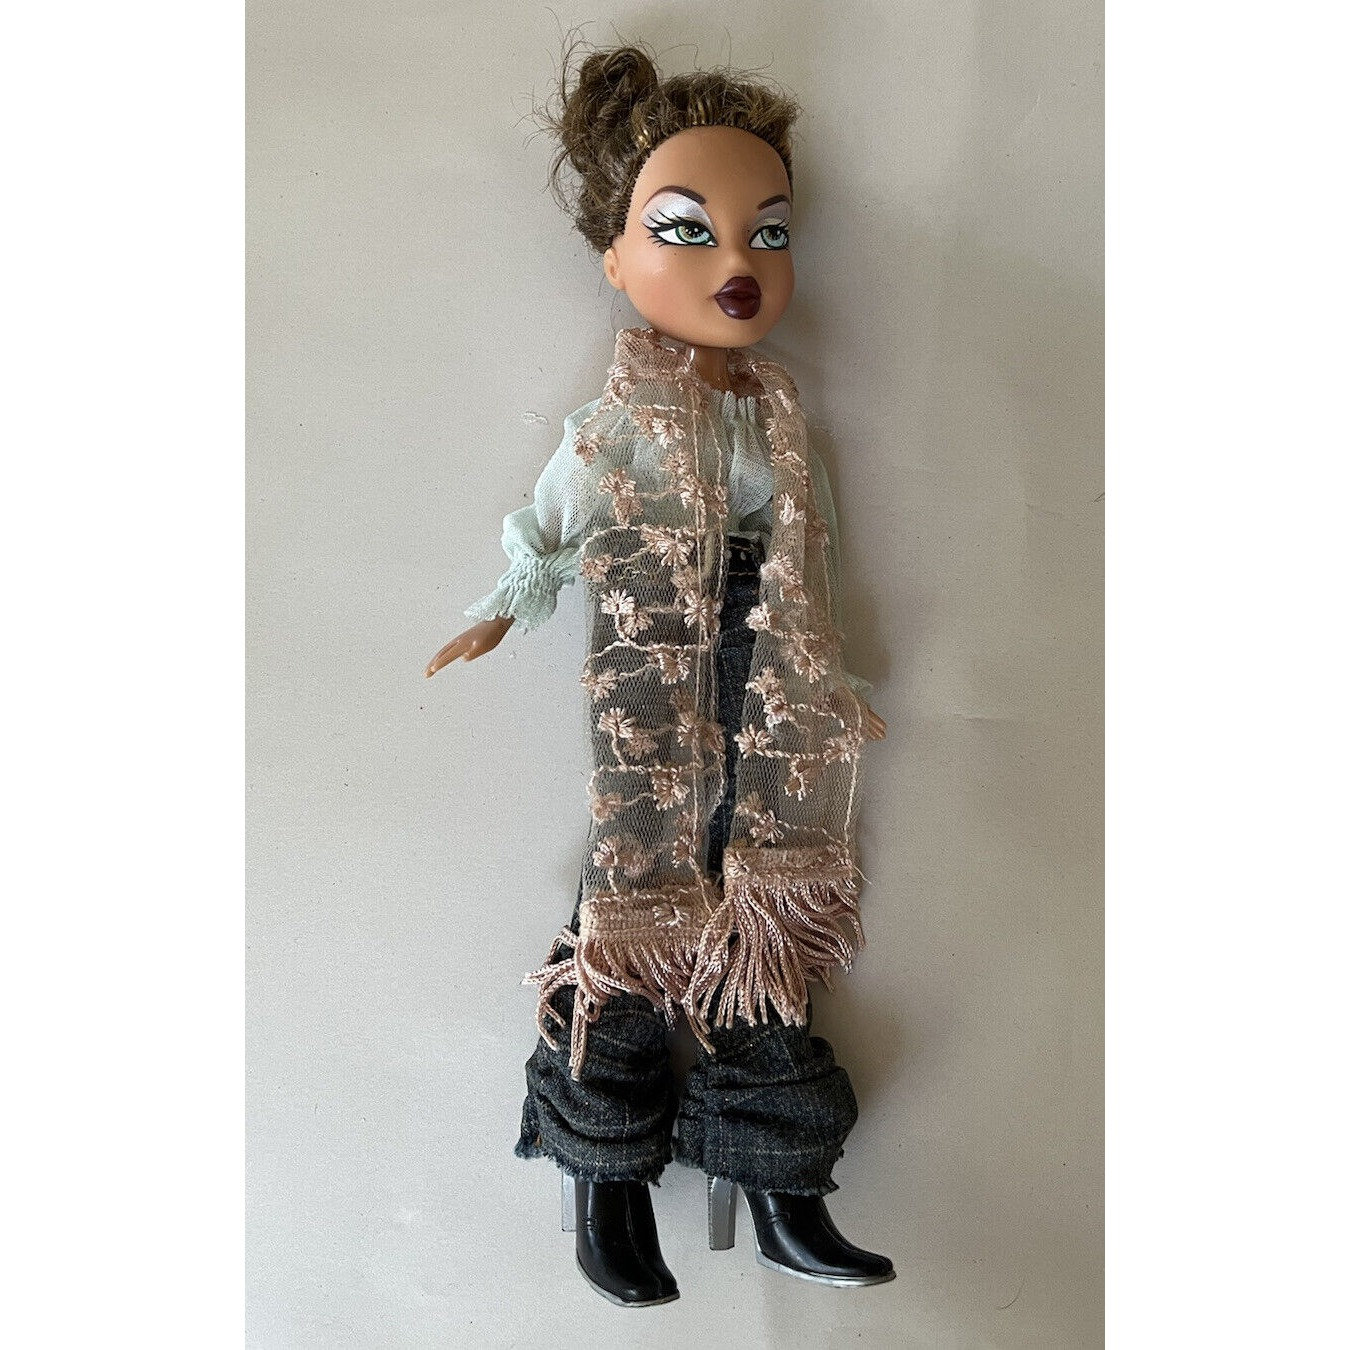  Bratz Alwayz Yasmin Fashion Doll with 10 Accessories